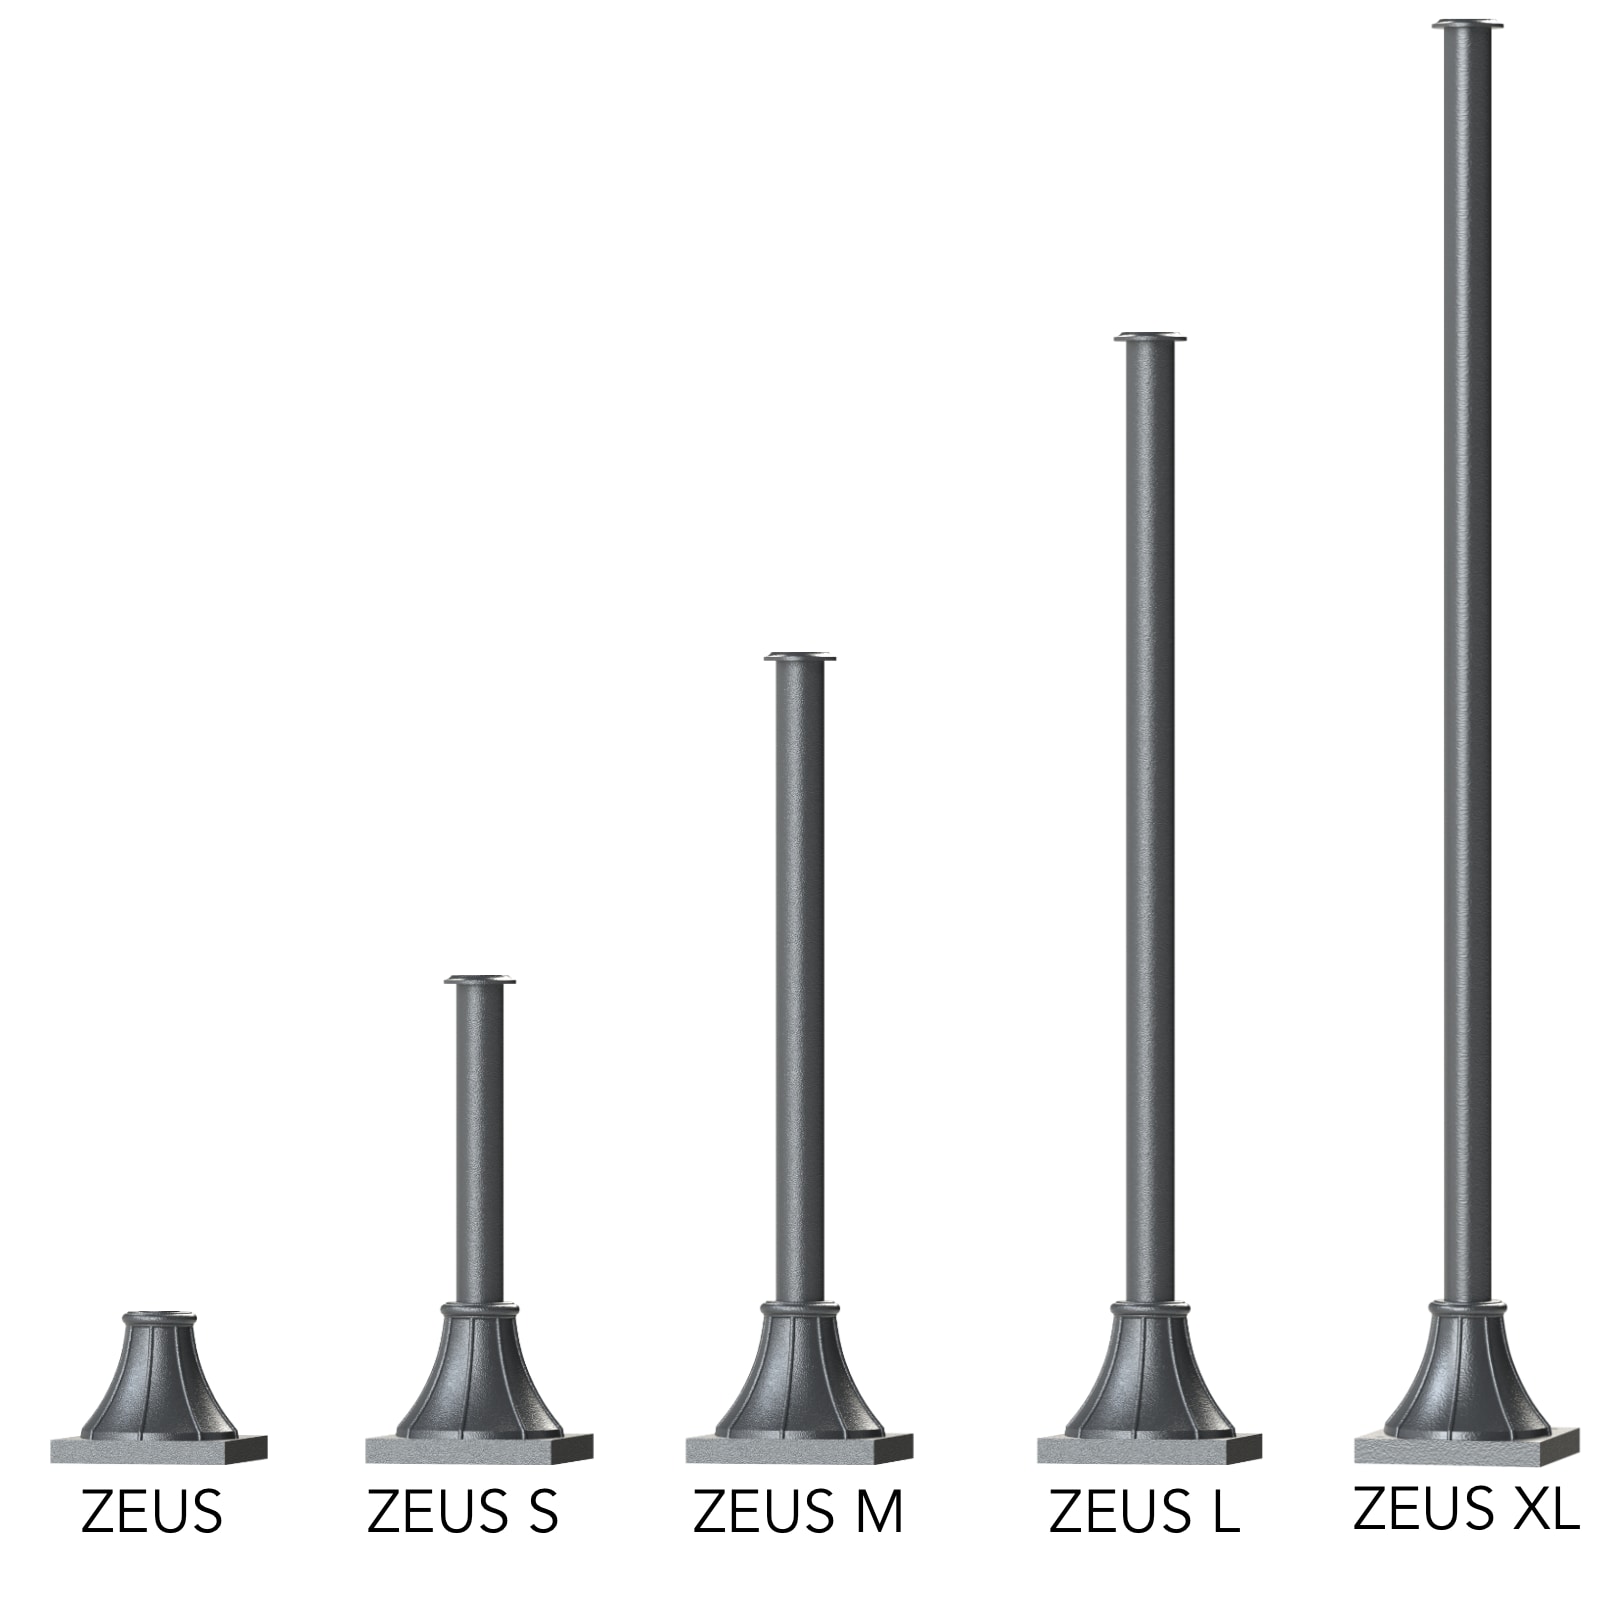 Mastserie ZEUS in fünf Größen 17 / 50 / 83 / 117 / 151 cm